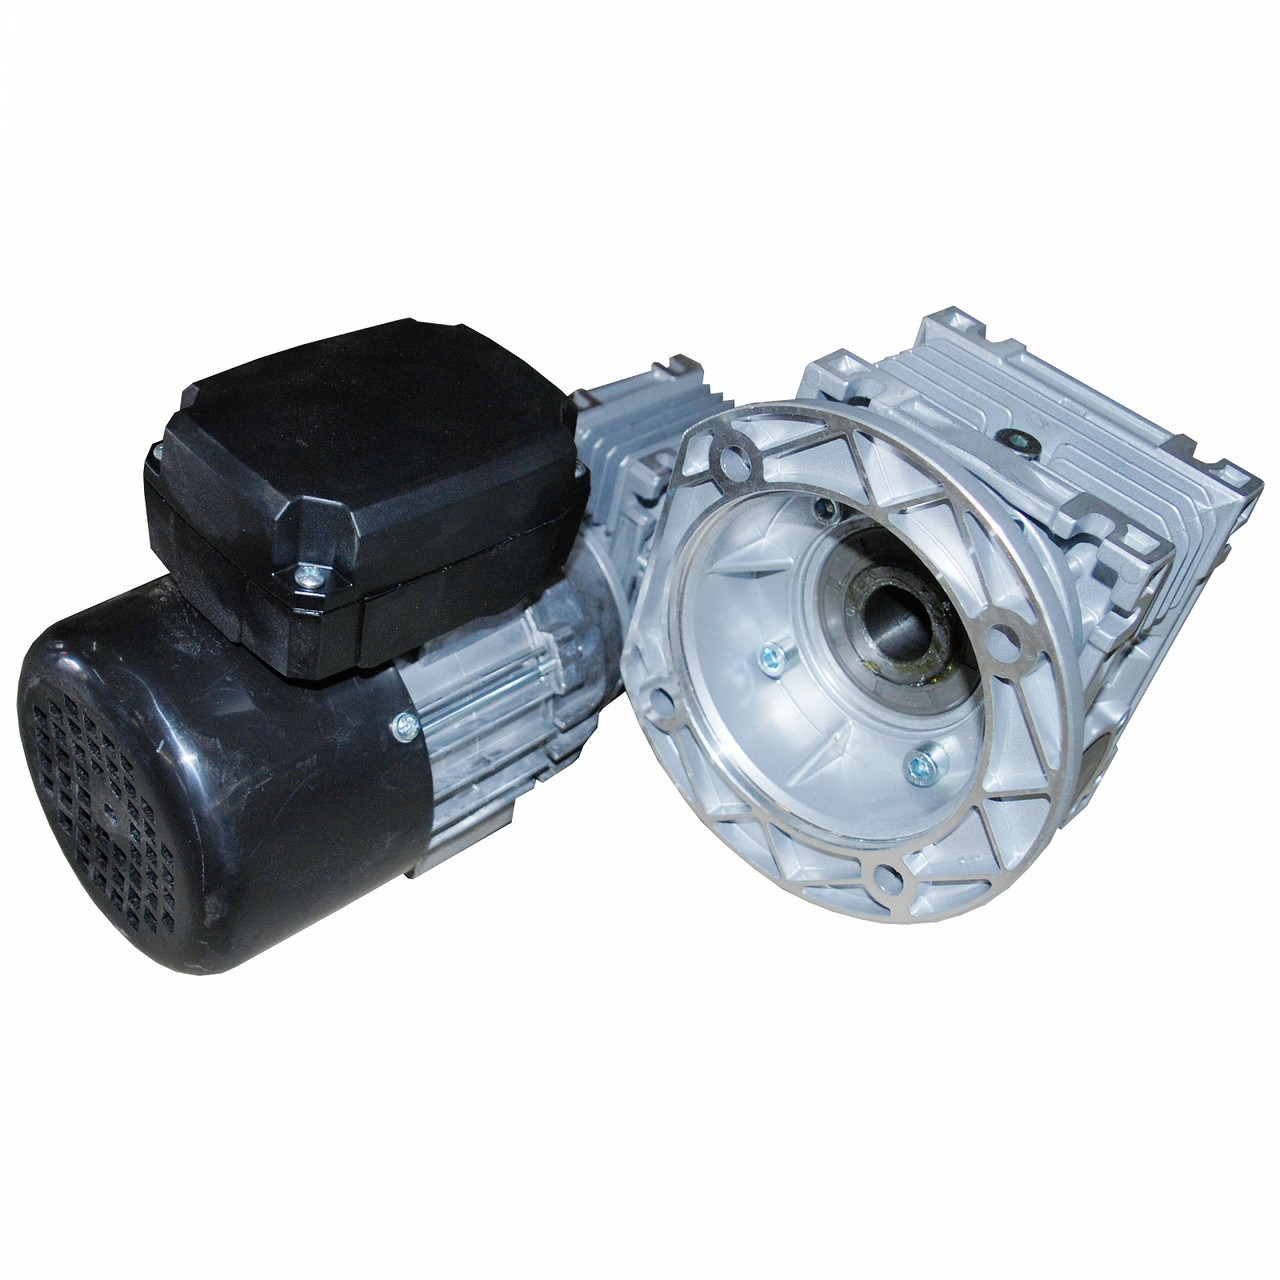 Моторедуктор NMRV030/050 електродвигун однофазний 0,18 kW - 3,3 об/хв подаючий механізм пальника i=450